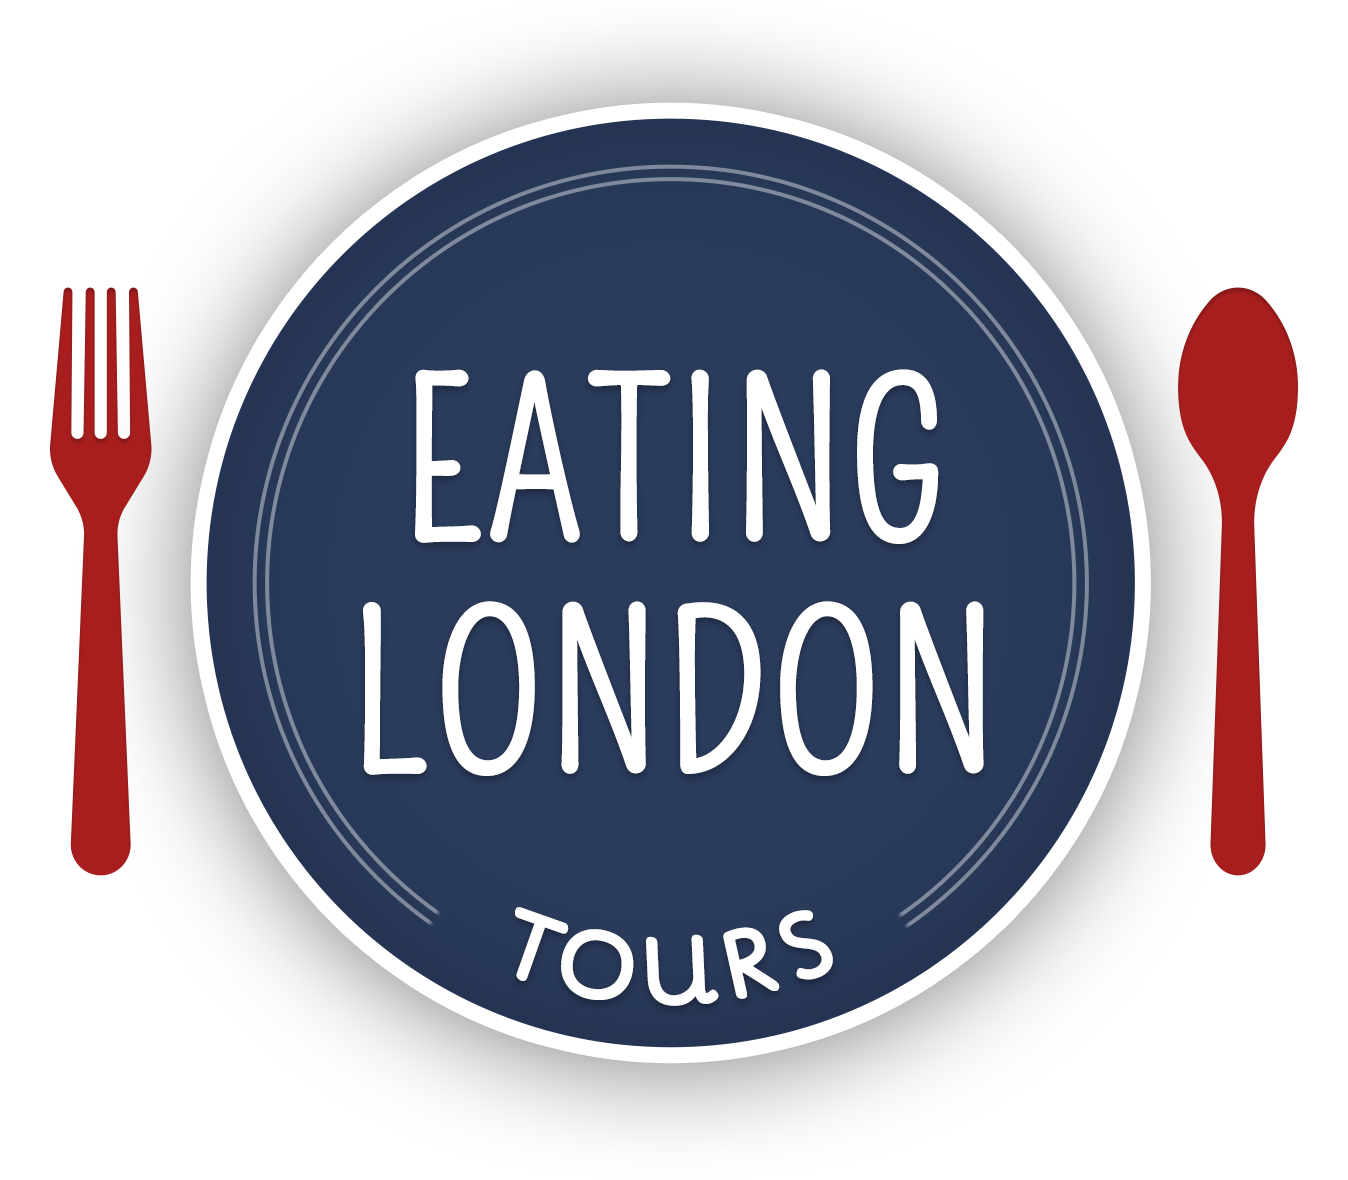 Eating London Food Tours